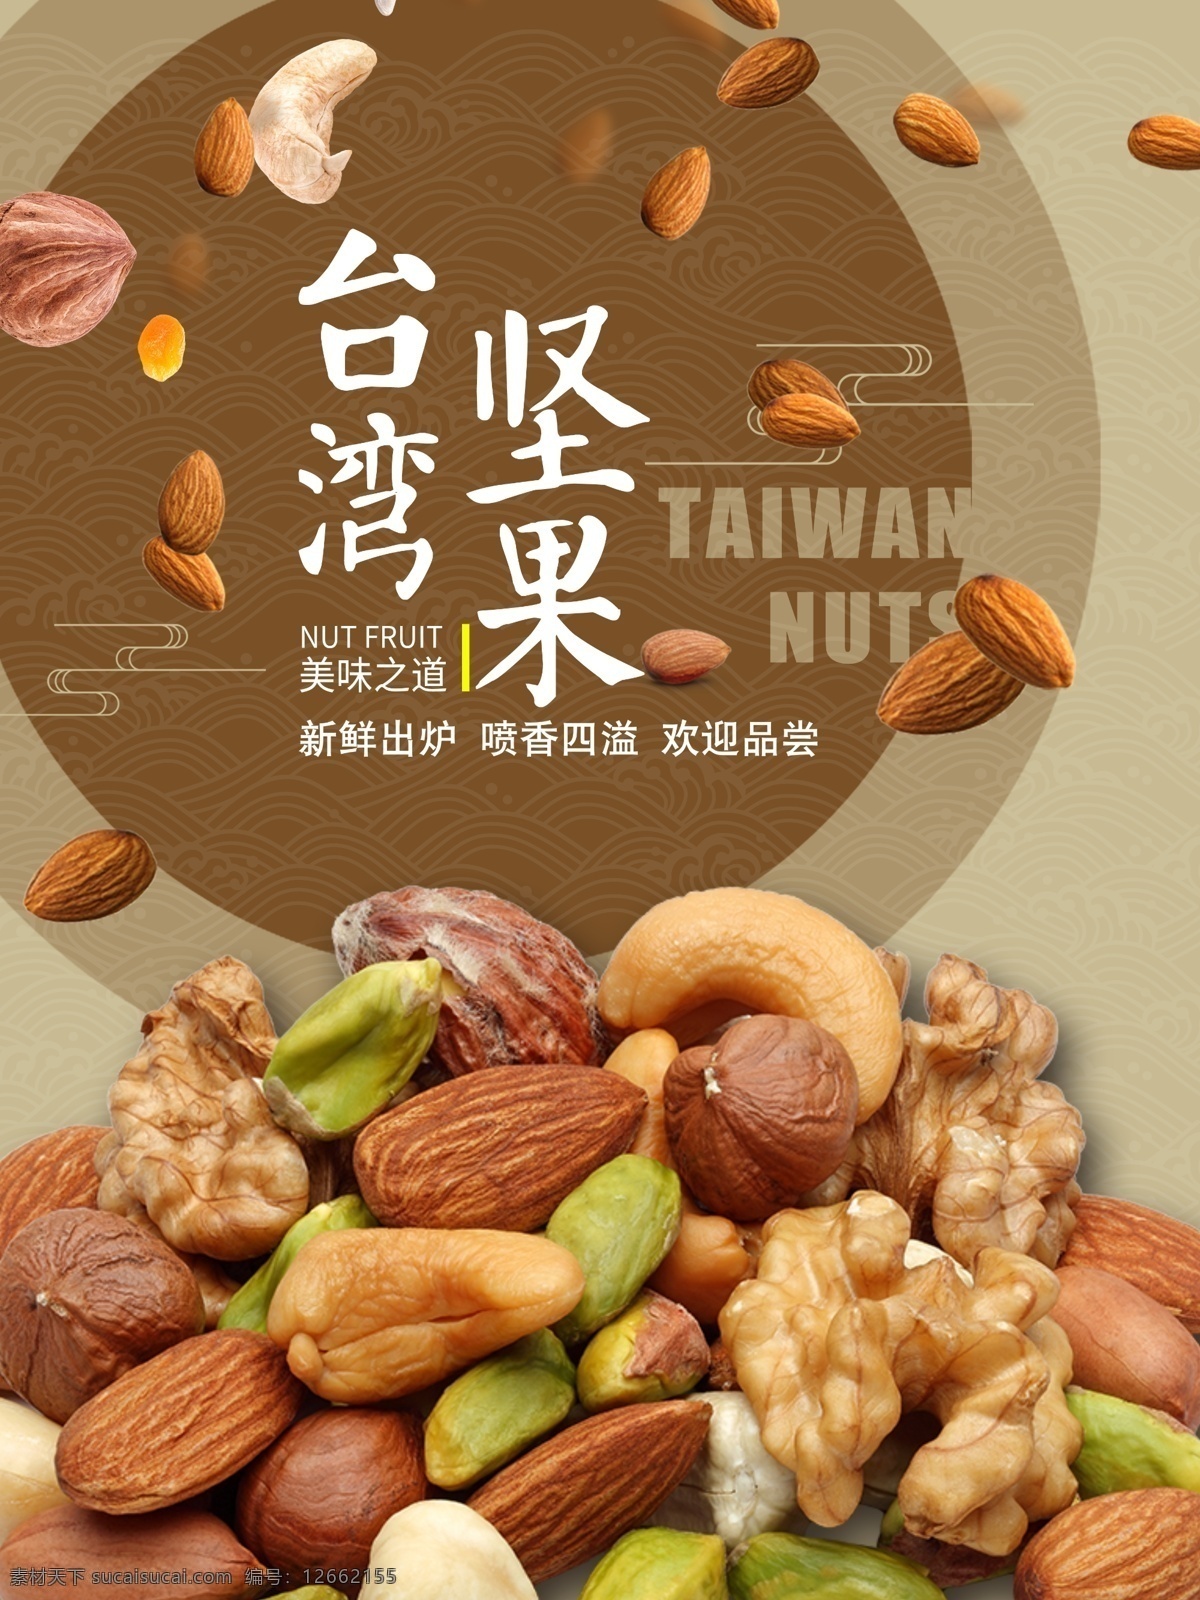 坚果零食海报 坚果 零食 海报 台湾 美味之道